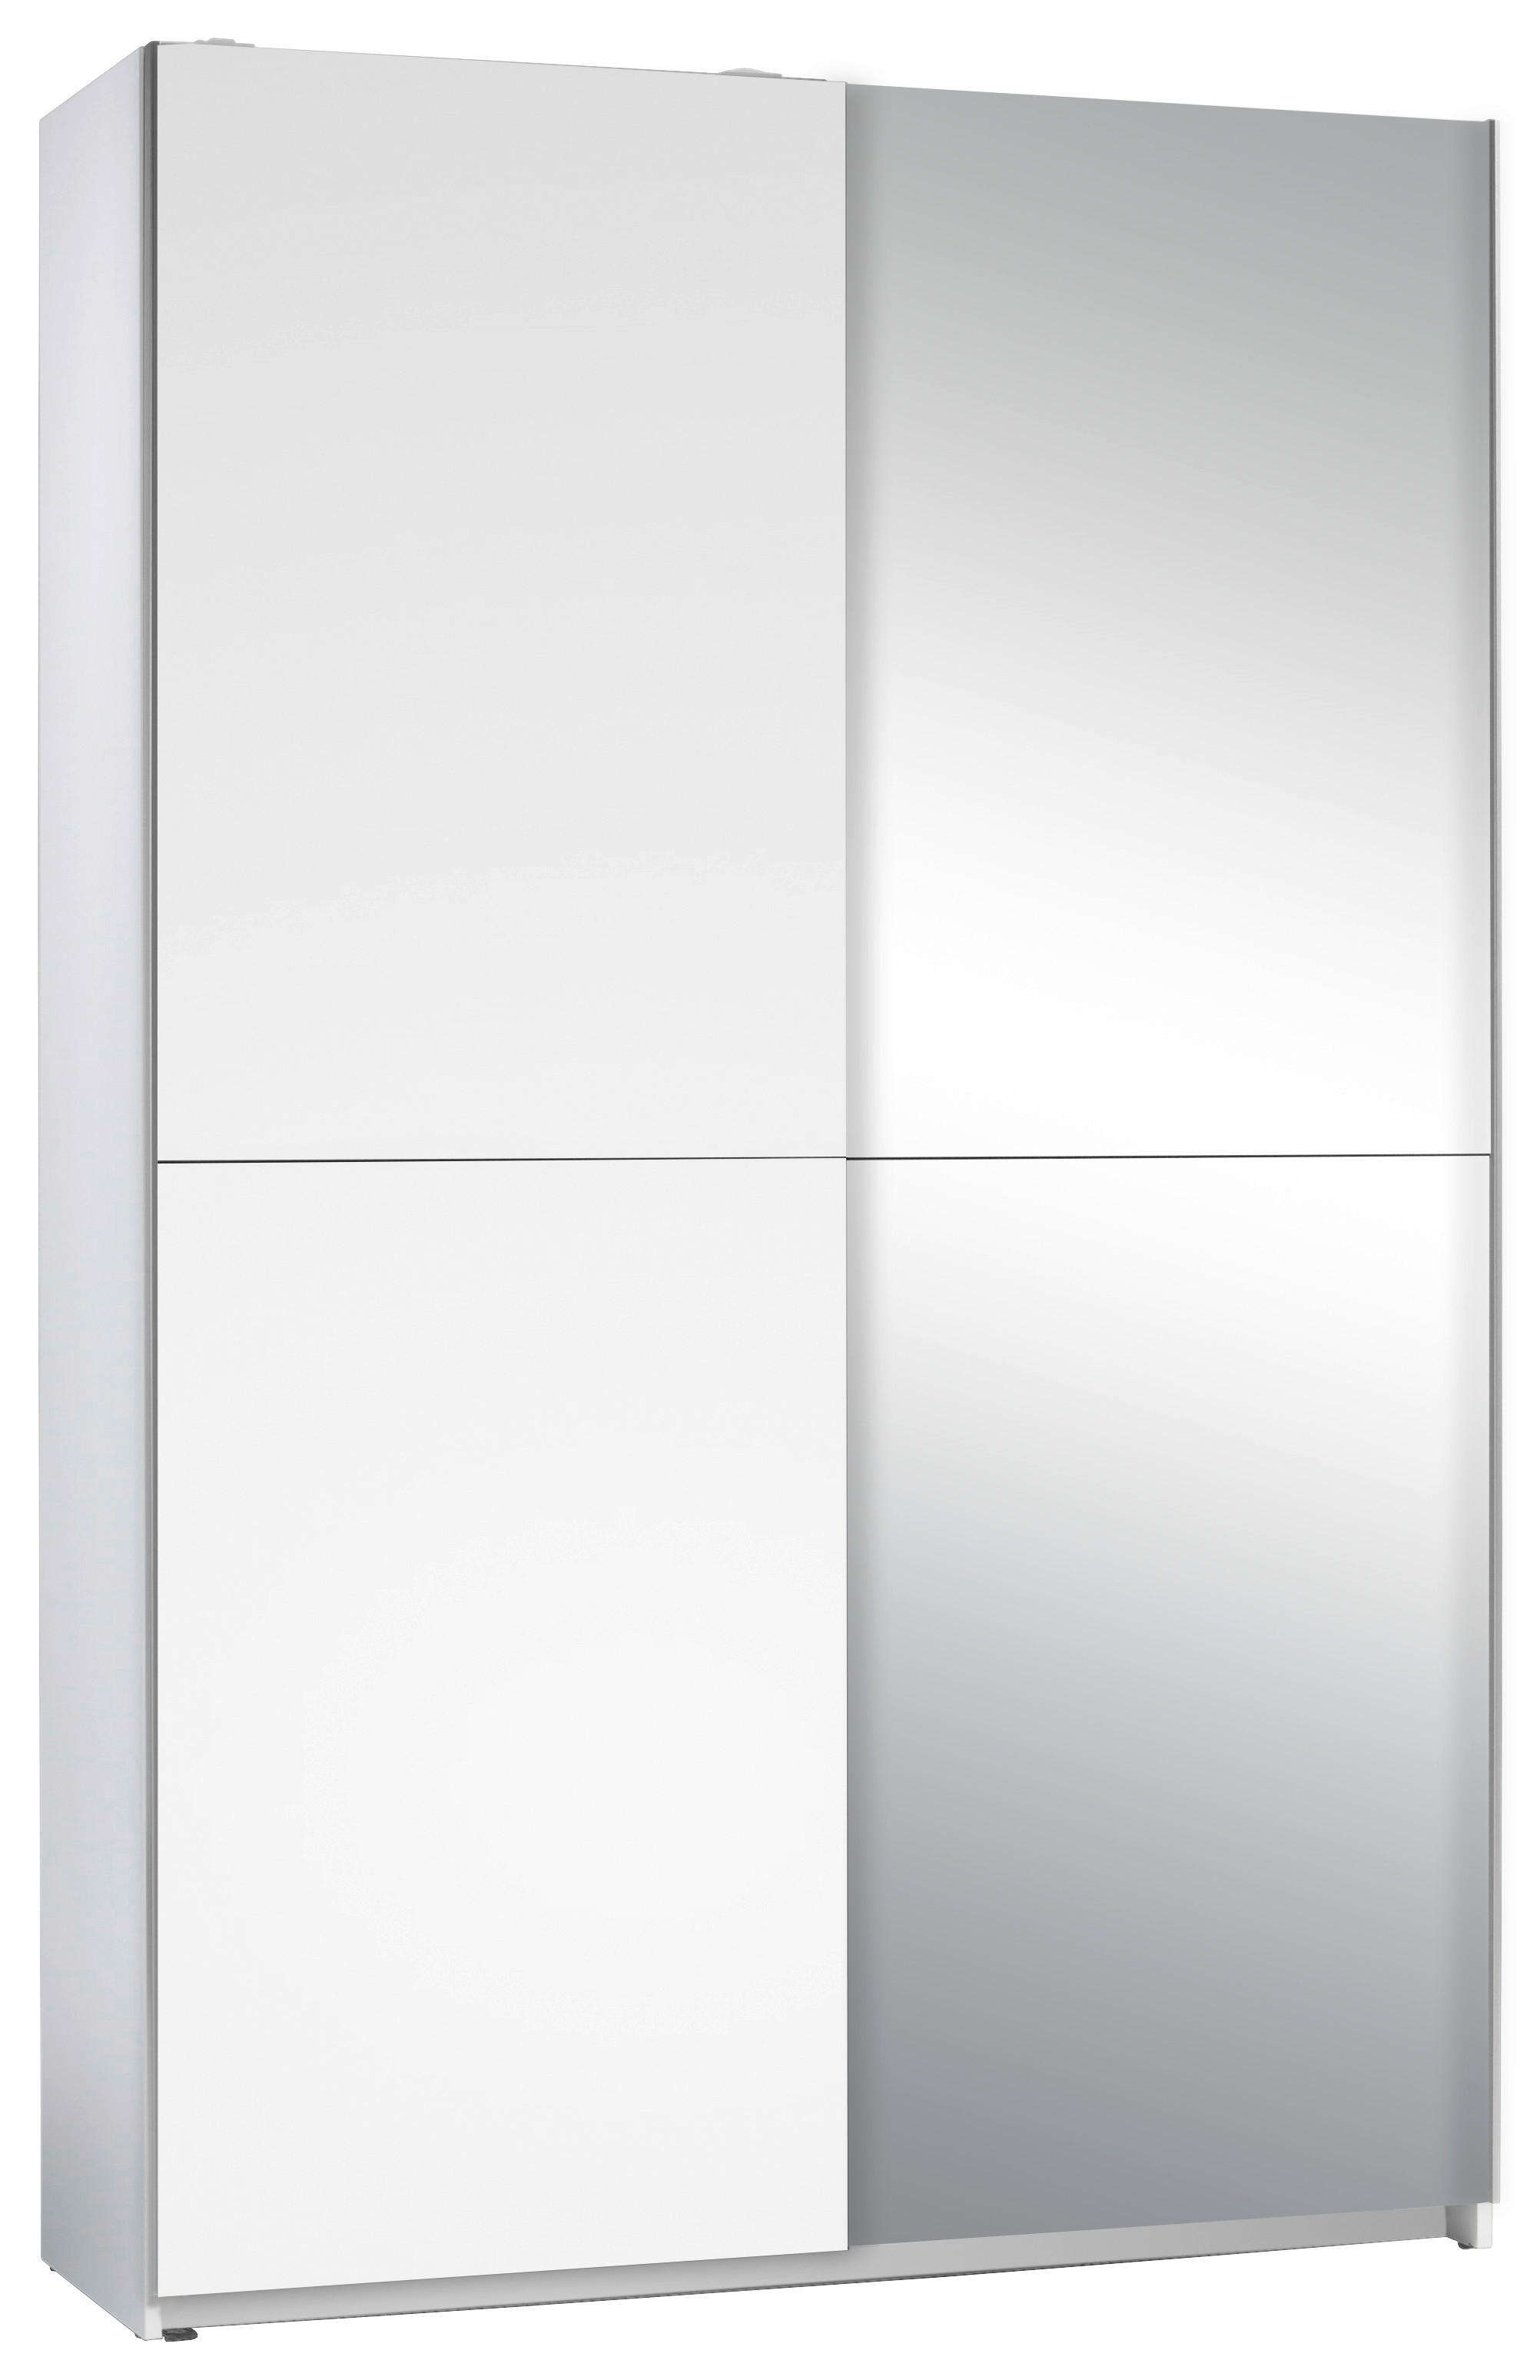 SCHWEBETÜRENSCHRANK 2-türig Weiß  - Silberfarben/Weiß, Basics, Glas/Holzwerkstoff (125/195,5/38cm) - P & B